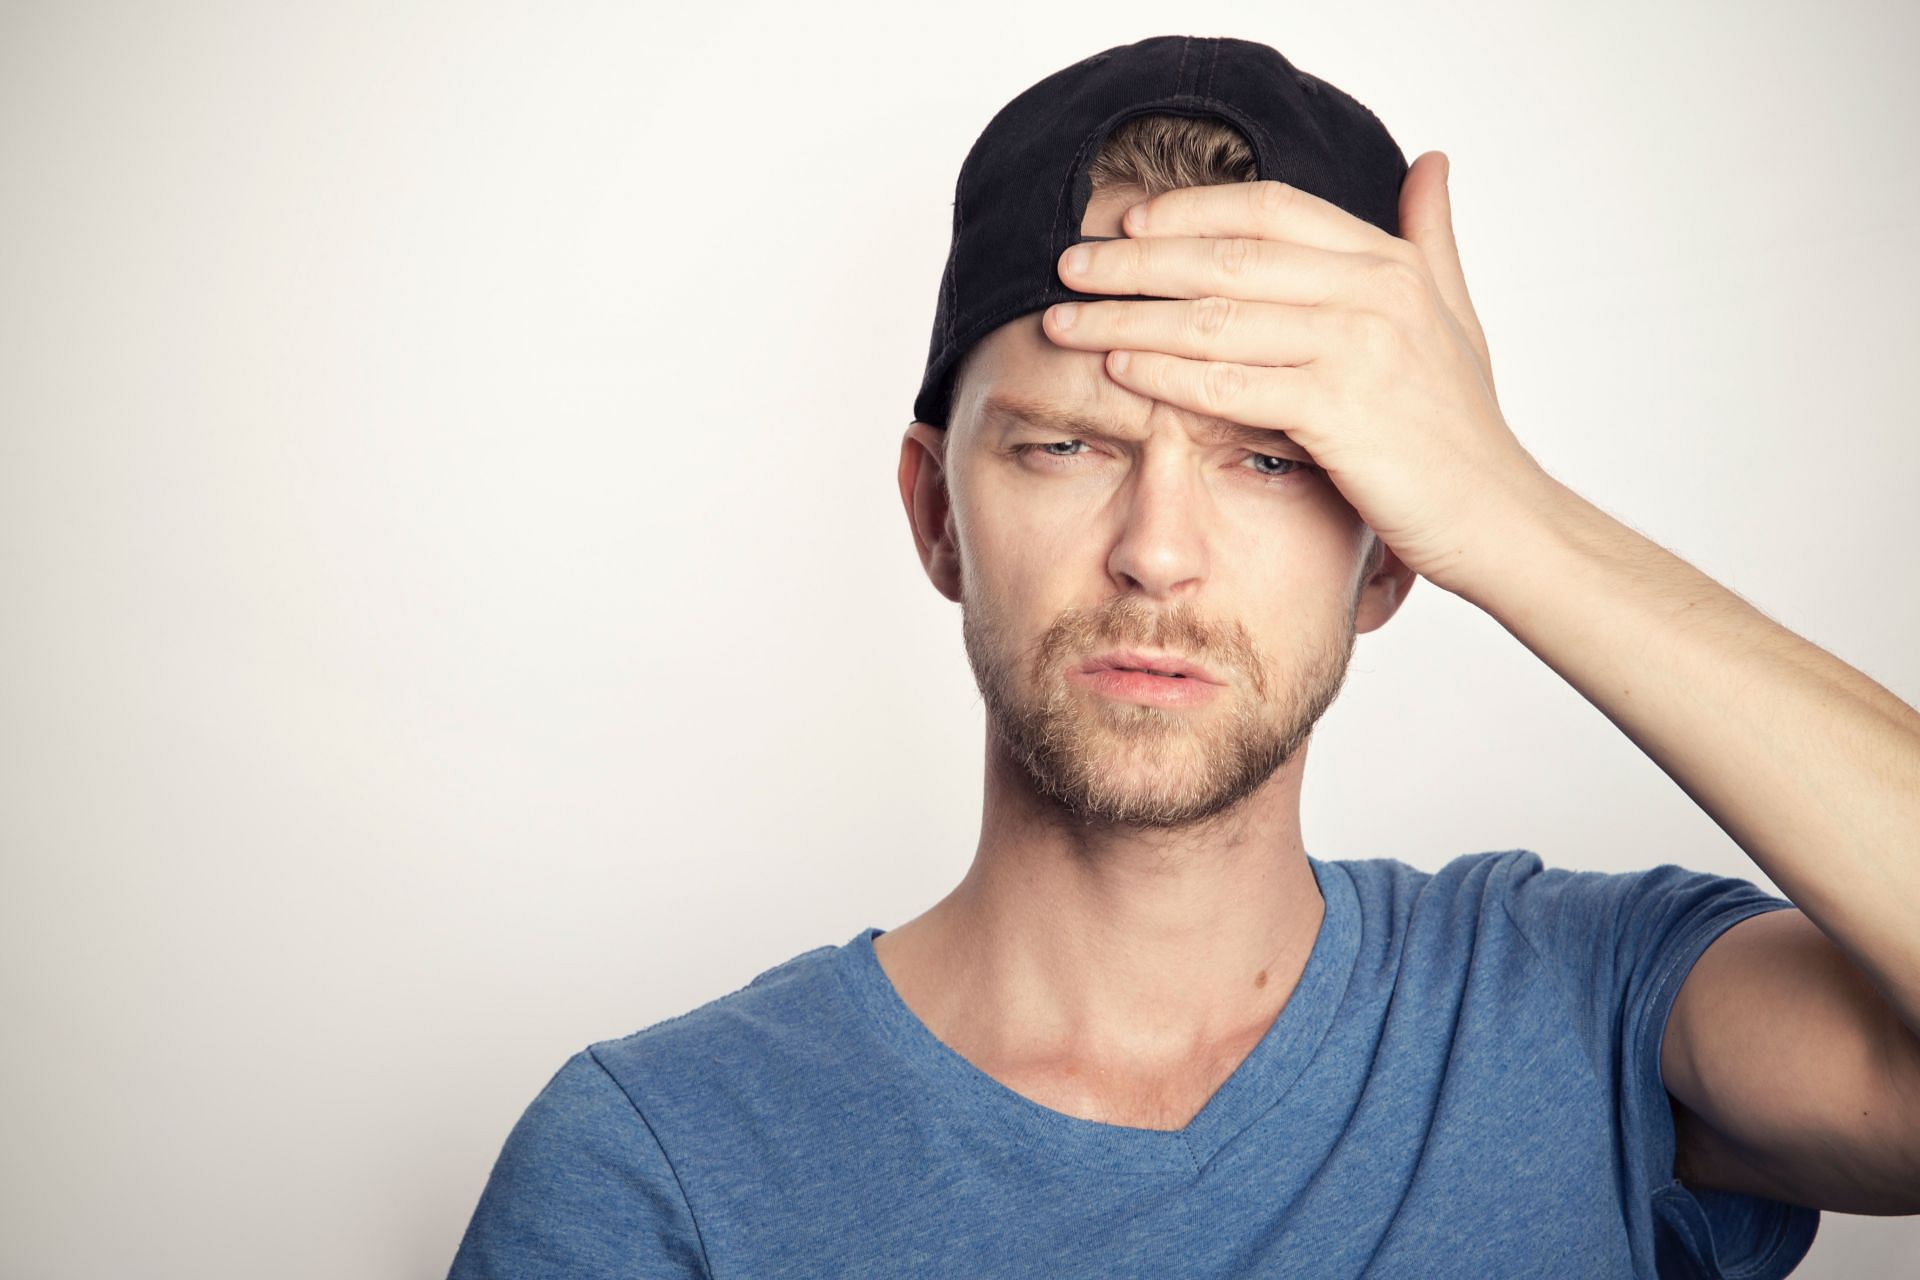 Migraine manifests as a throbbing headache. (Image via Unsplash/ Sander Sammy)